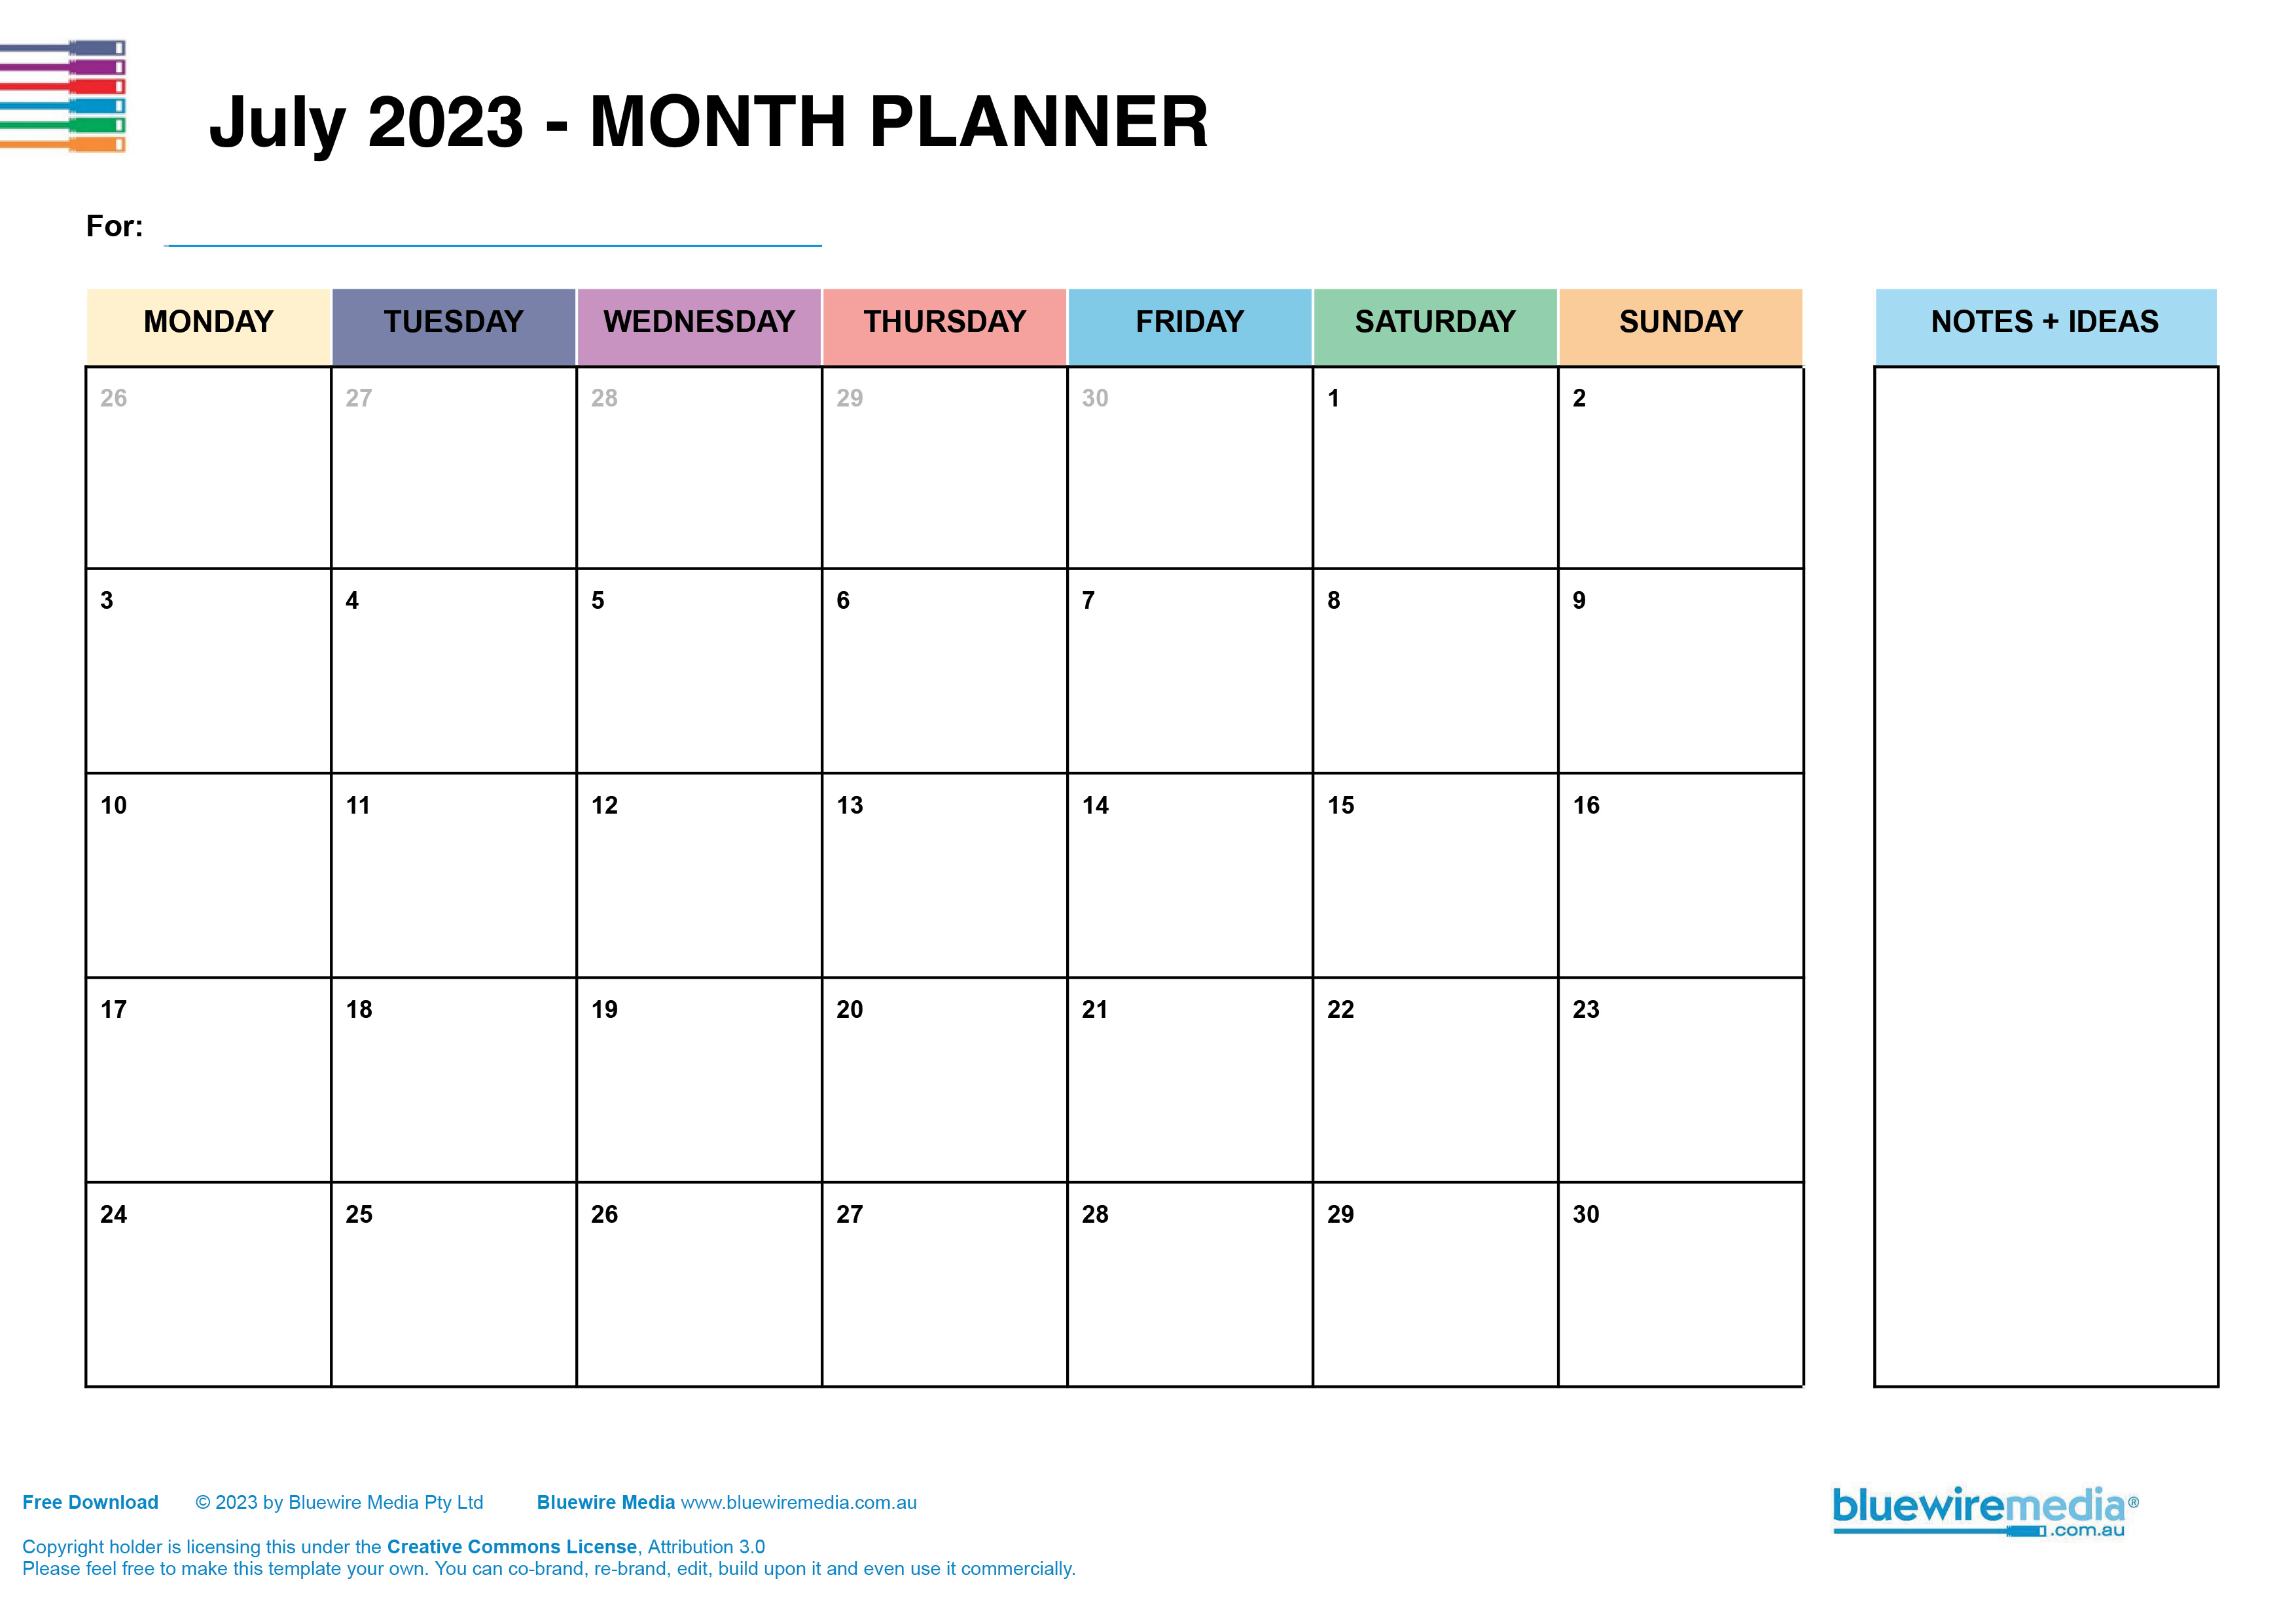 June 2023 Planner